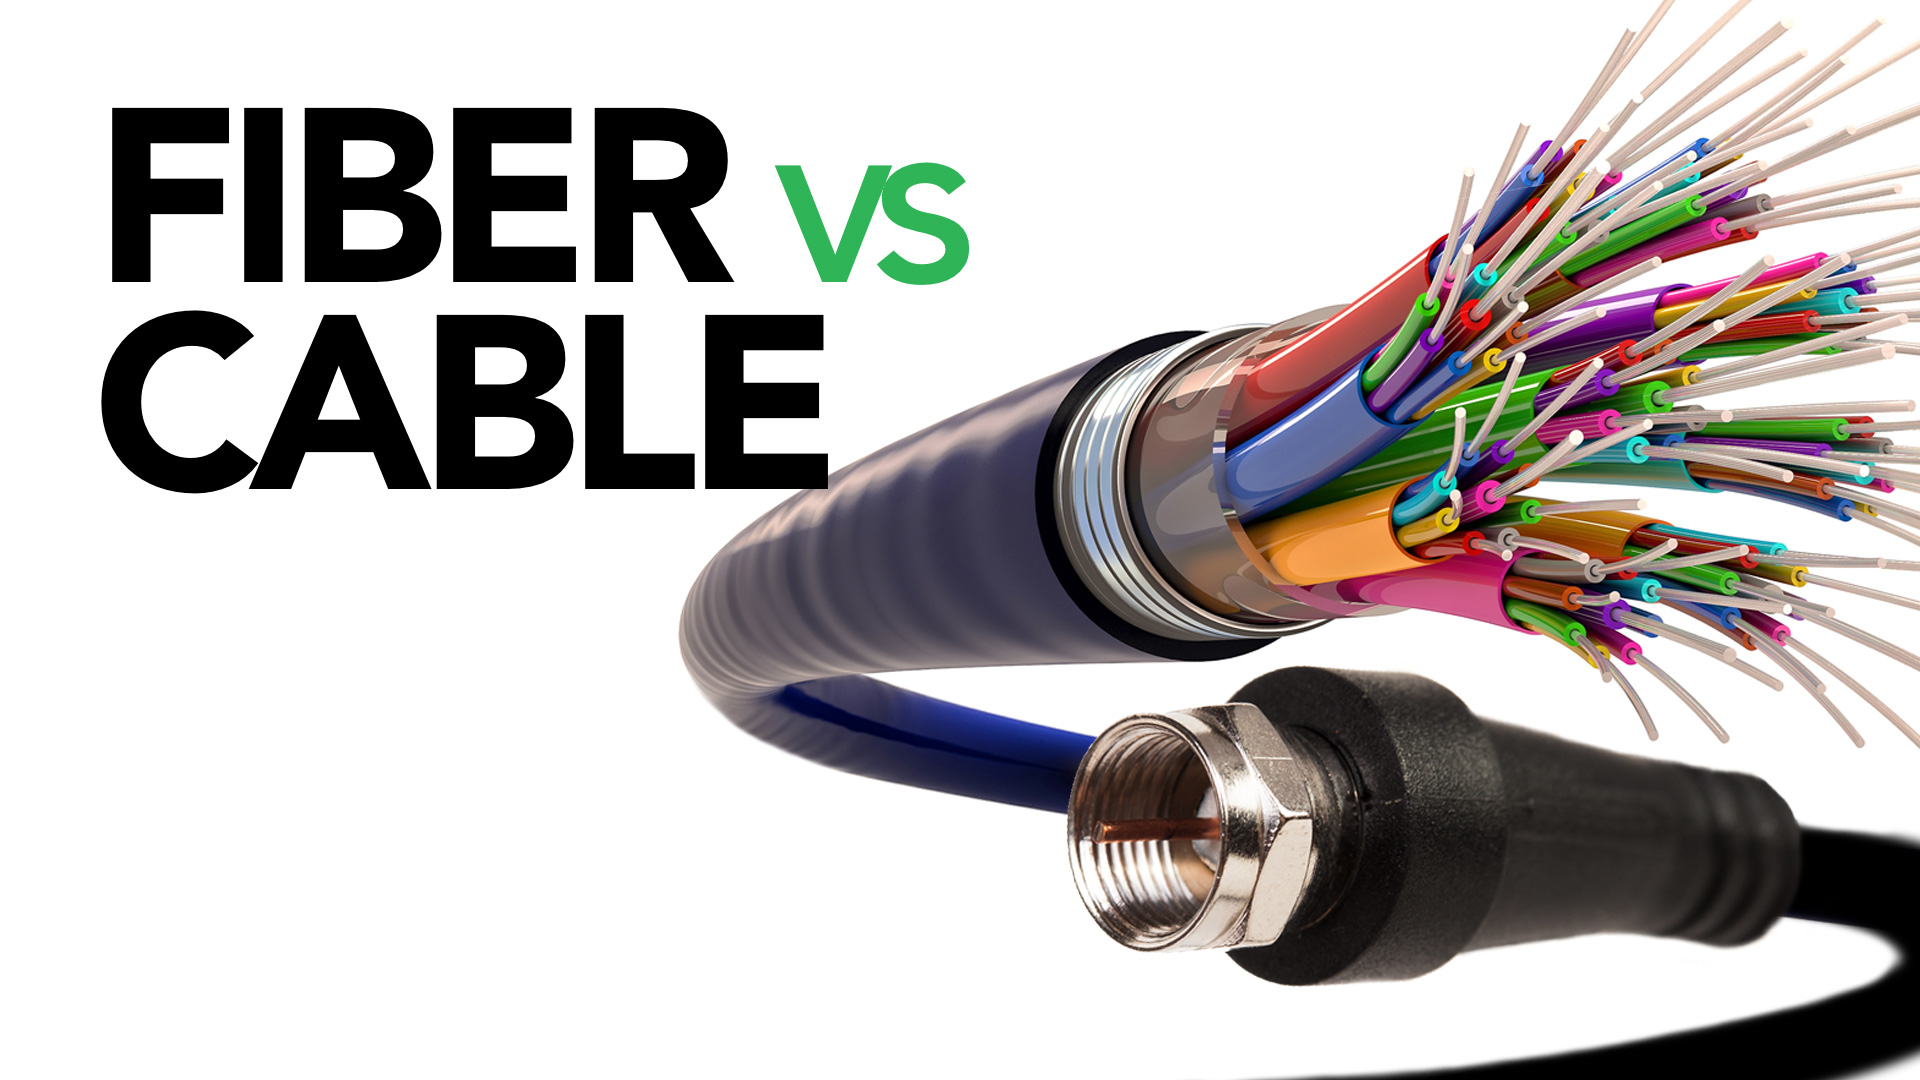 Fiber Internet vs Cable